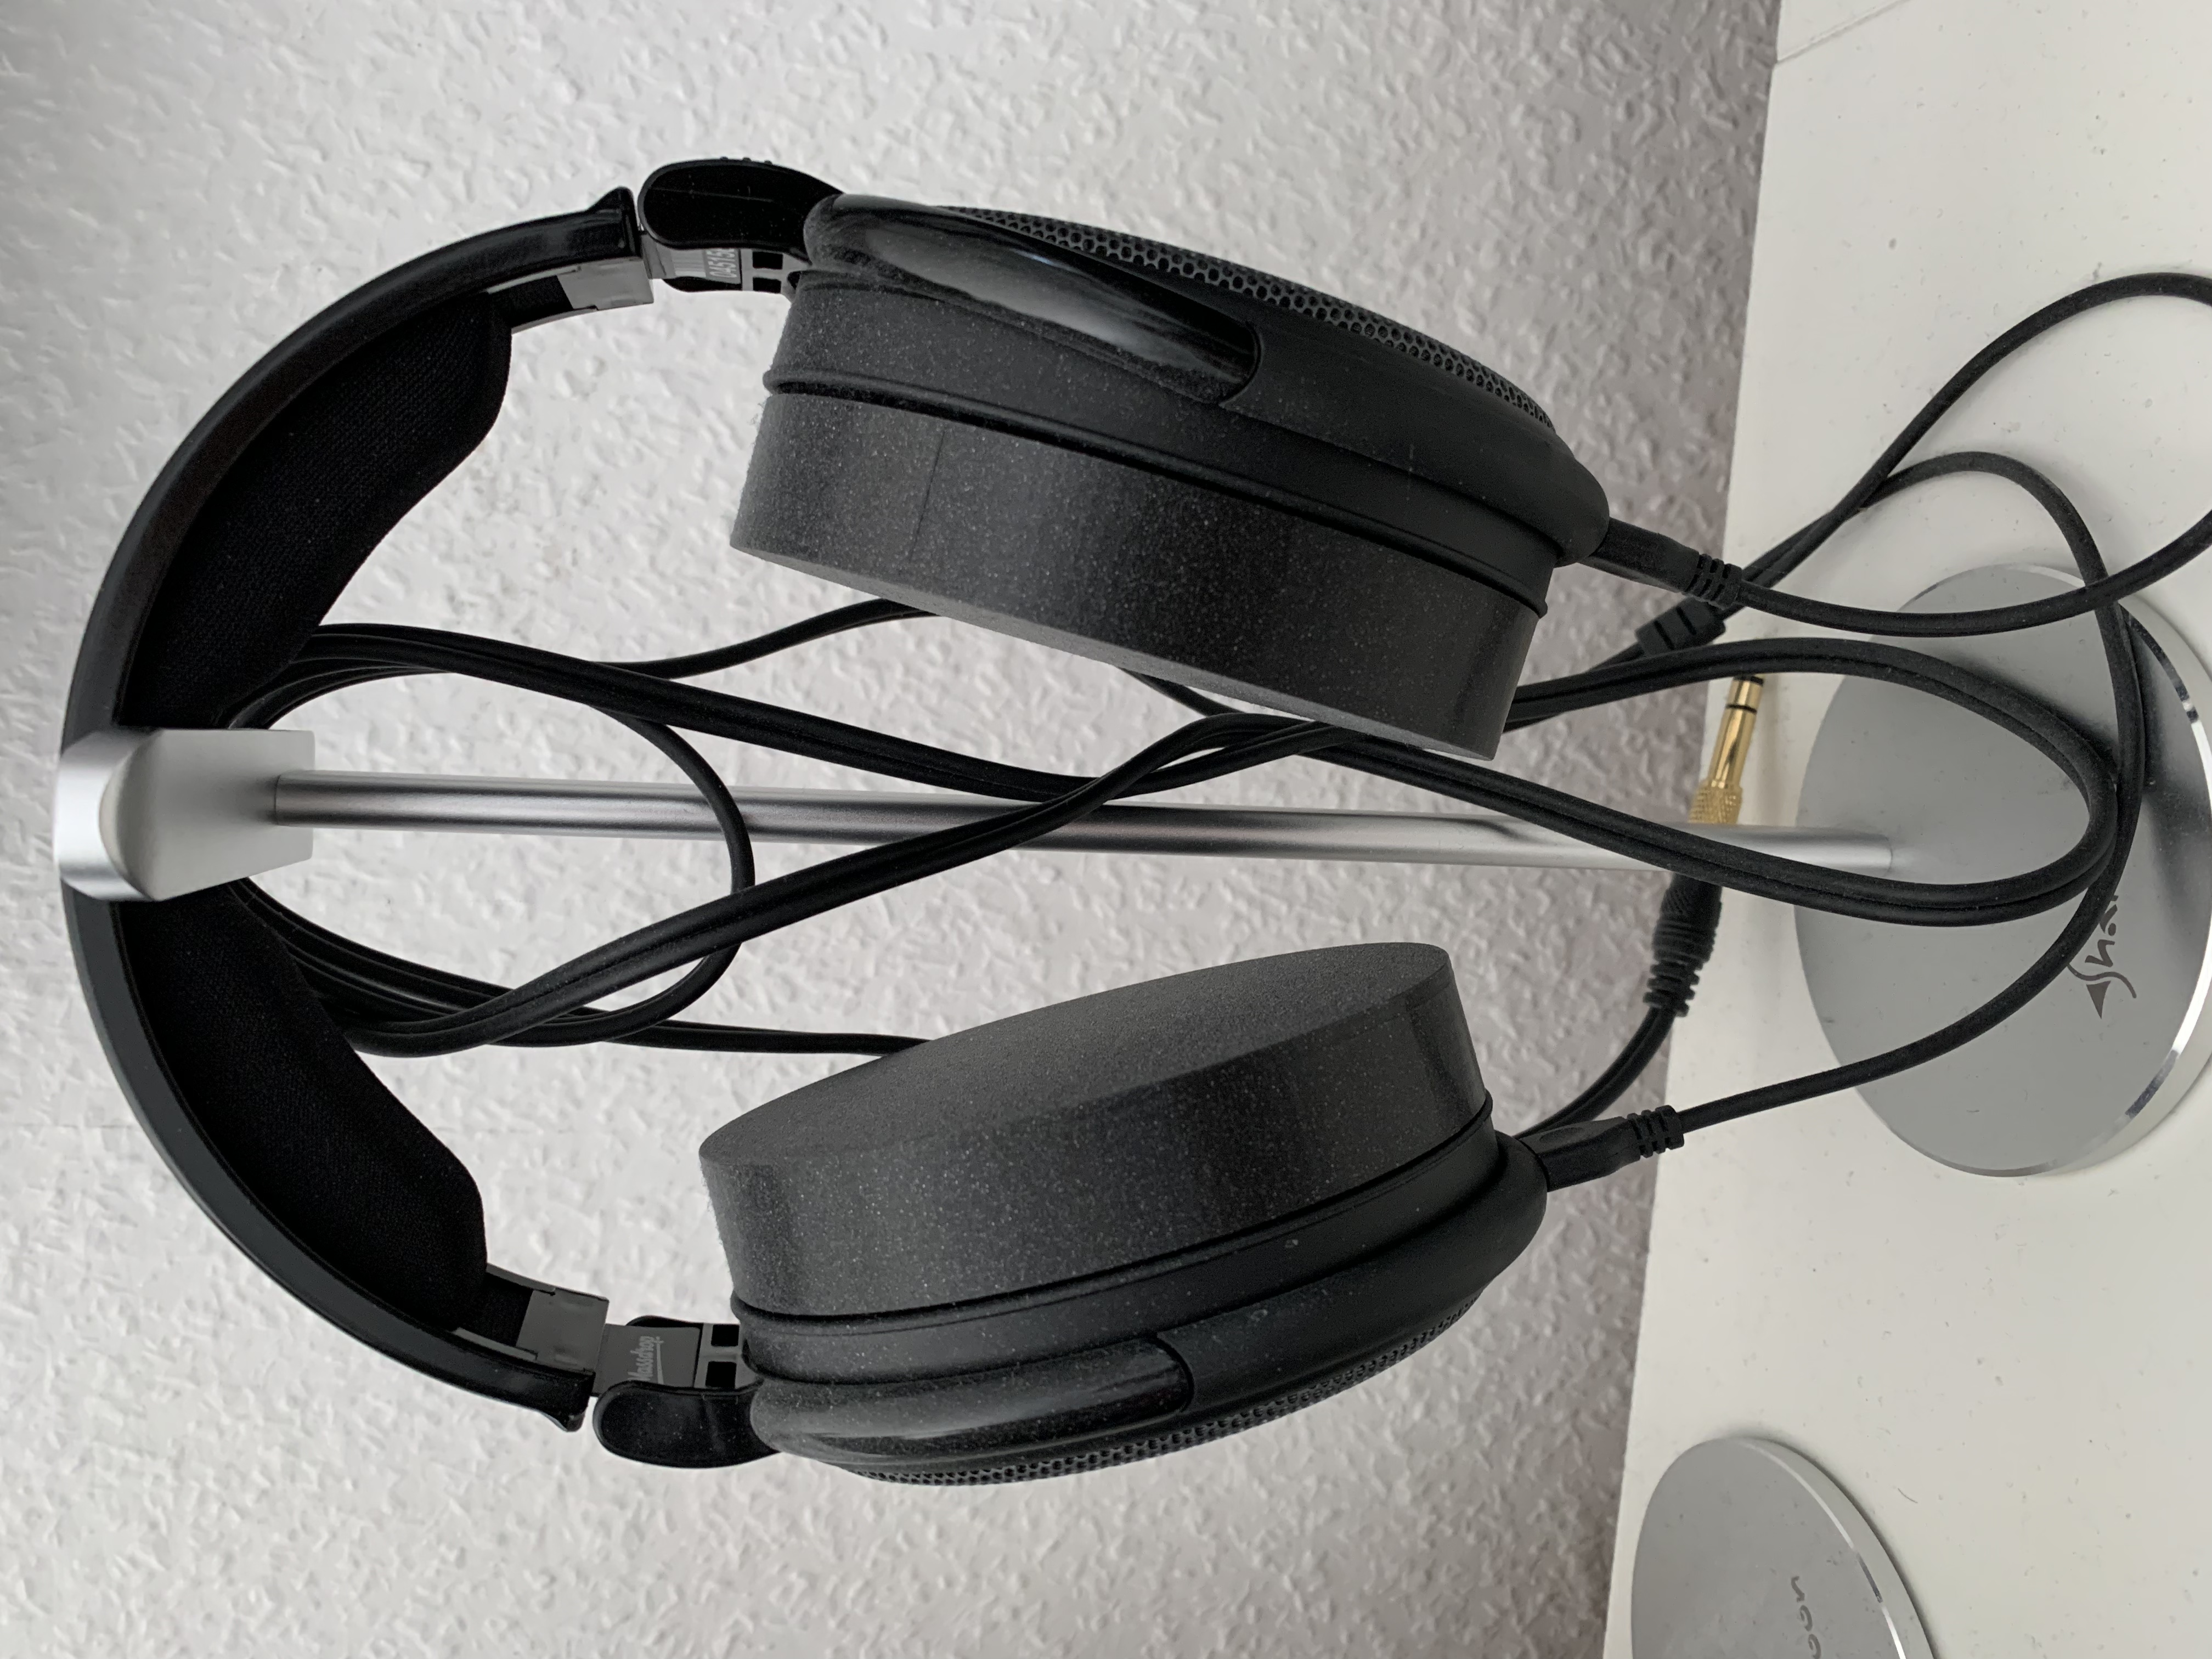 Dust cover for Sennheiser Headphones